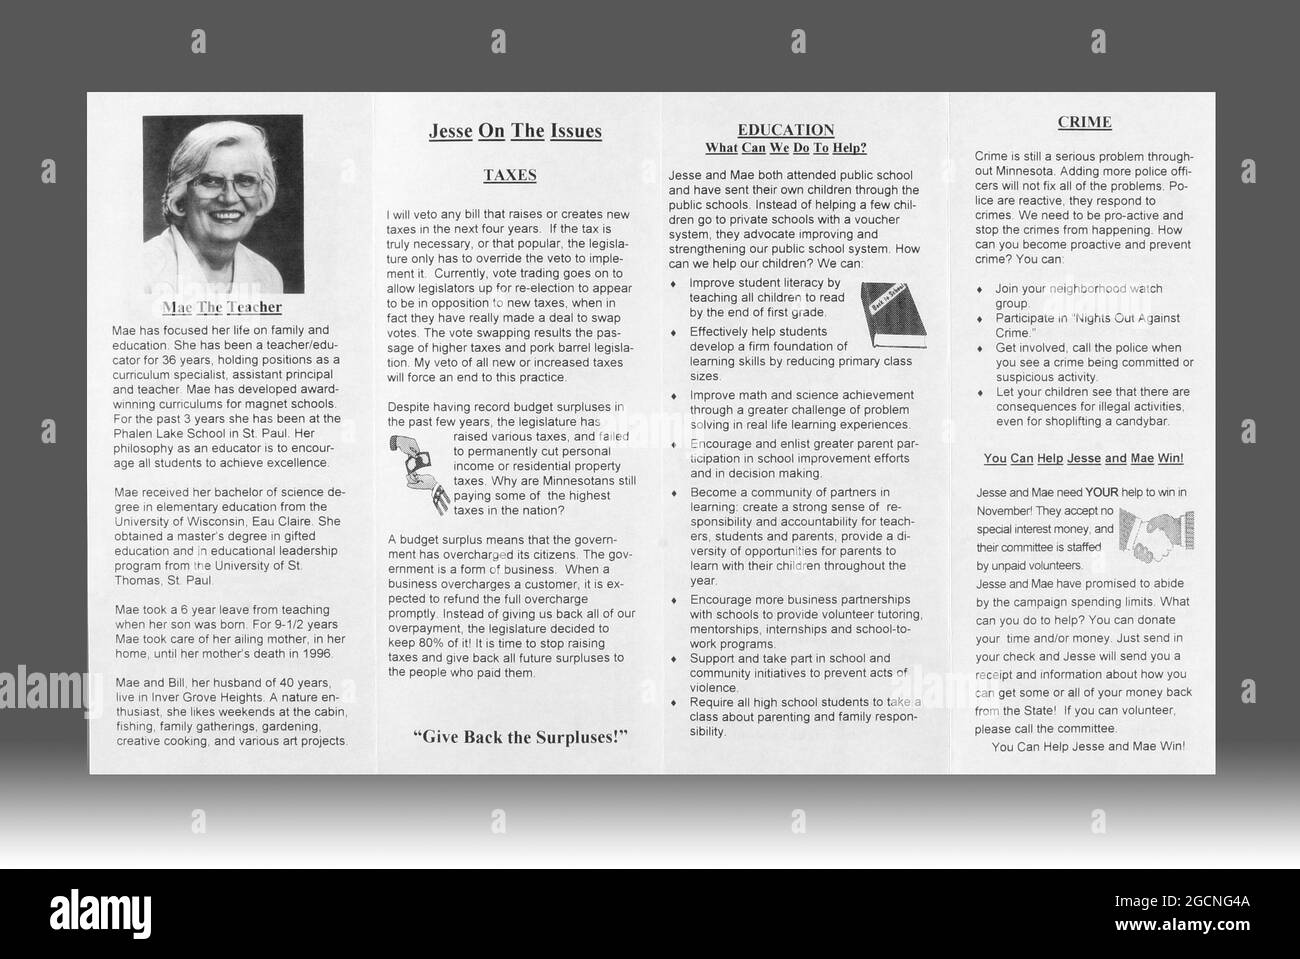 Materiale dell'anno elettorale 1998 per i candidati del Minnesota Reform Party per Governatore e Lieutenente Governatore, Jesse Ventura e Mae Schunk. Foto Stock